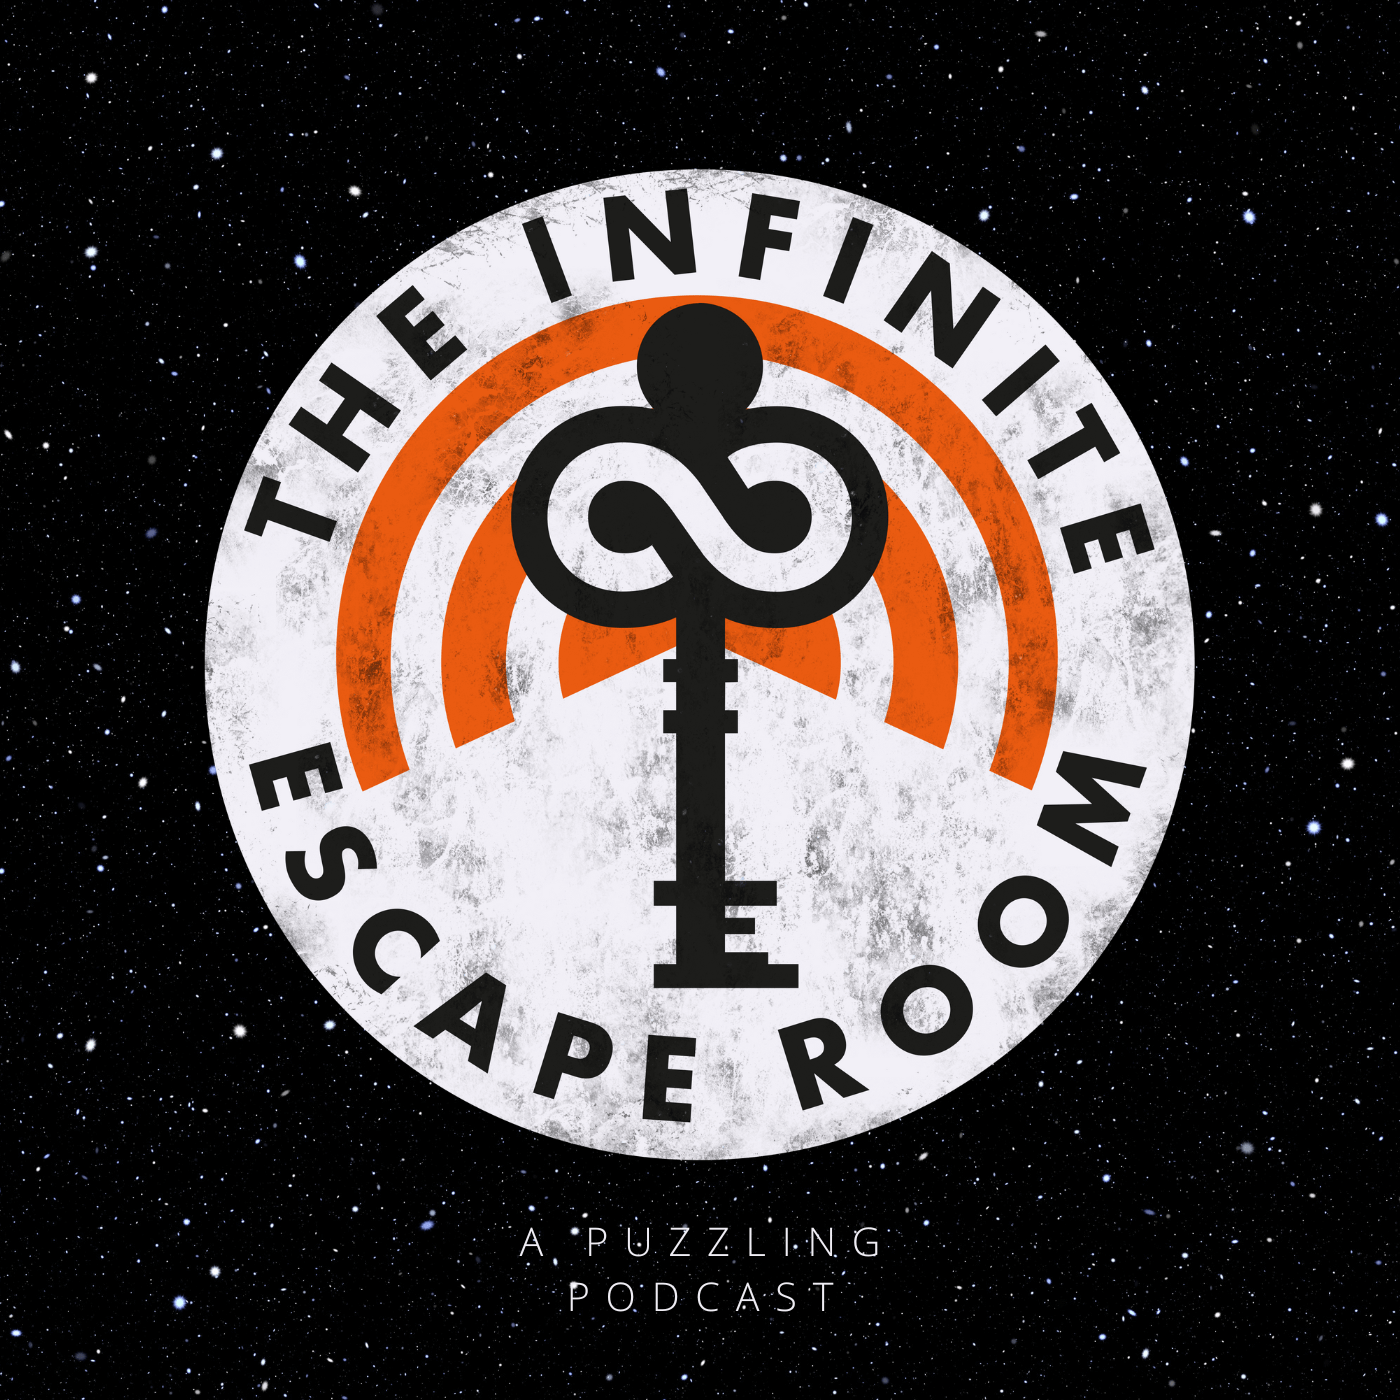 The Infinite Escape Room